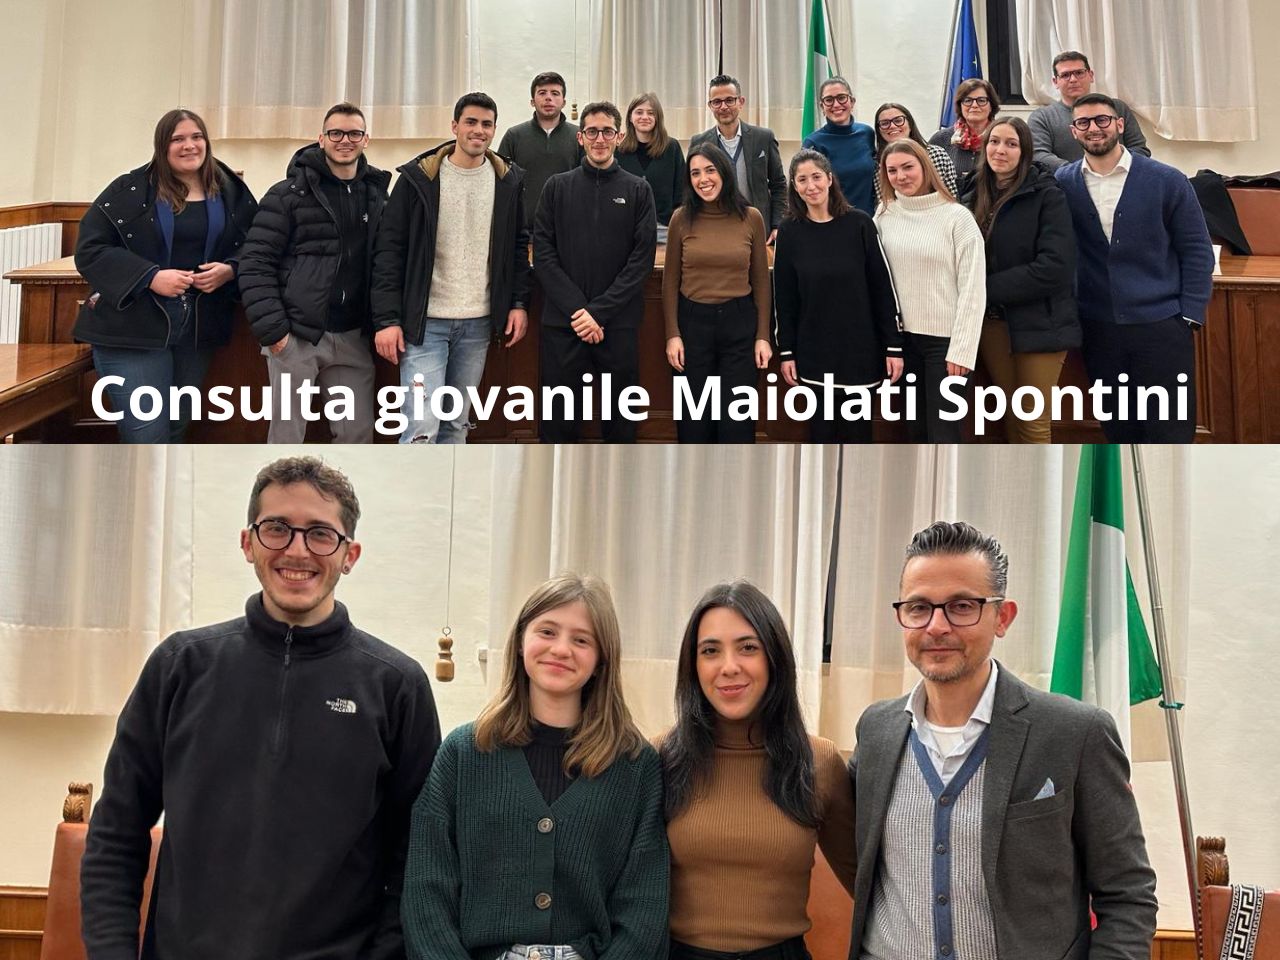 Maiolati Spontini: Consulta giovanile, eletti gli organi direttivi